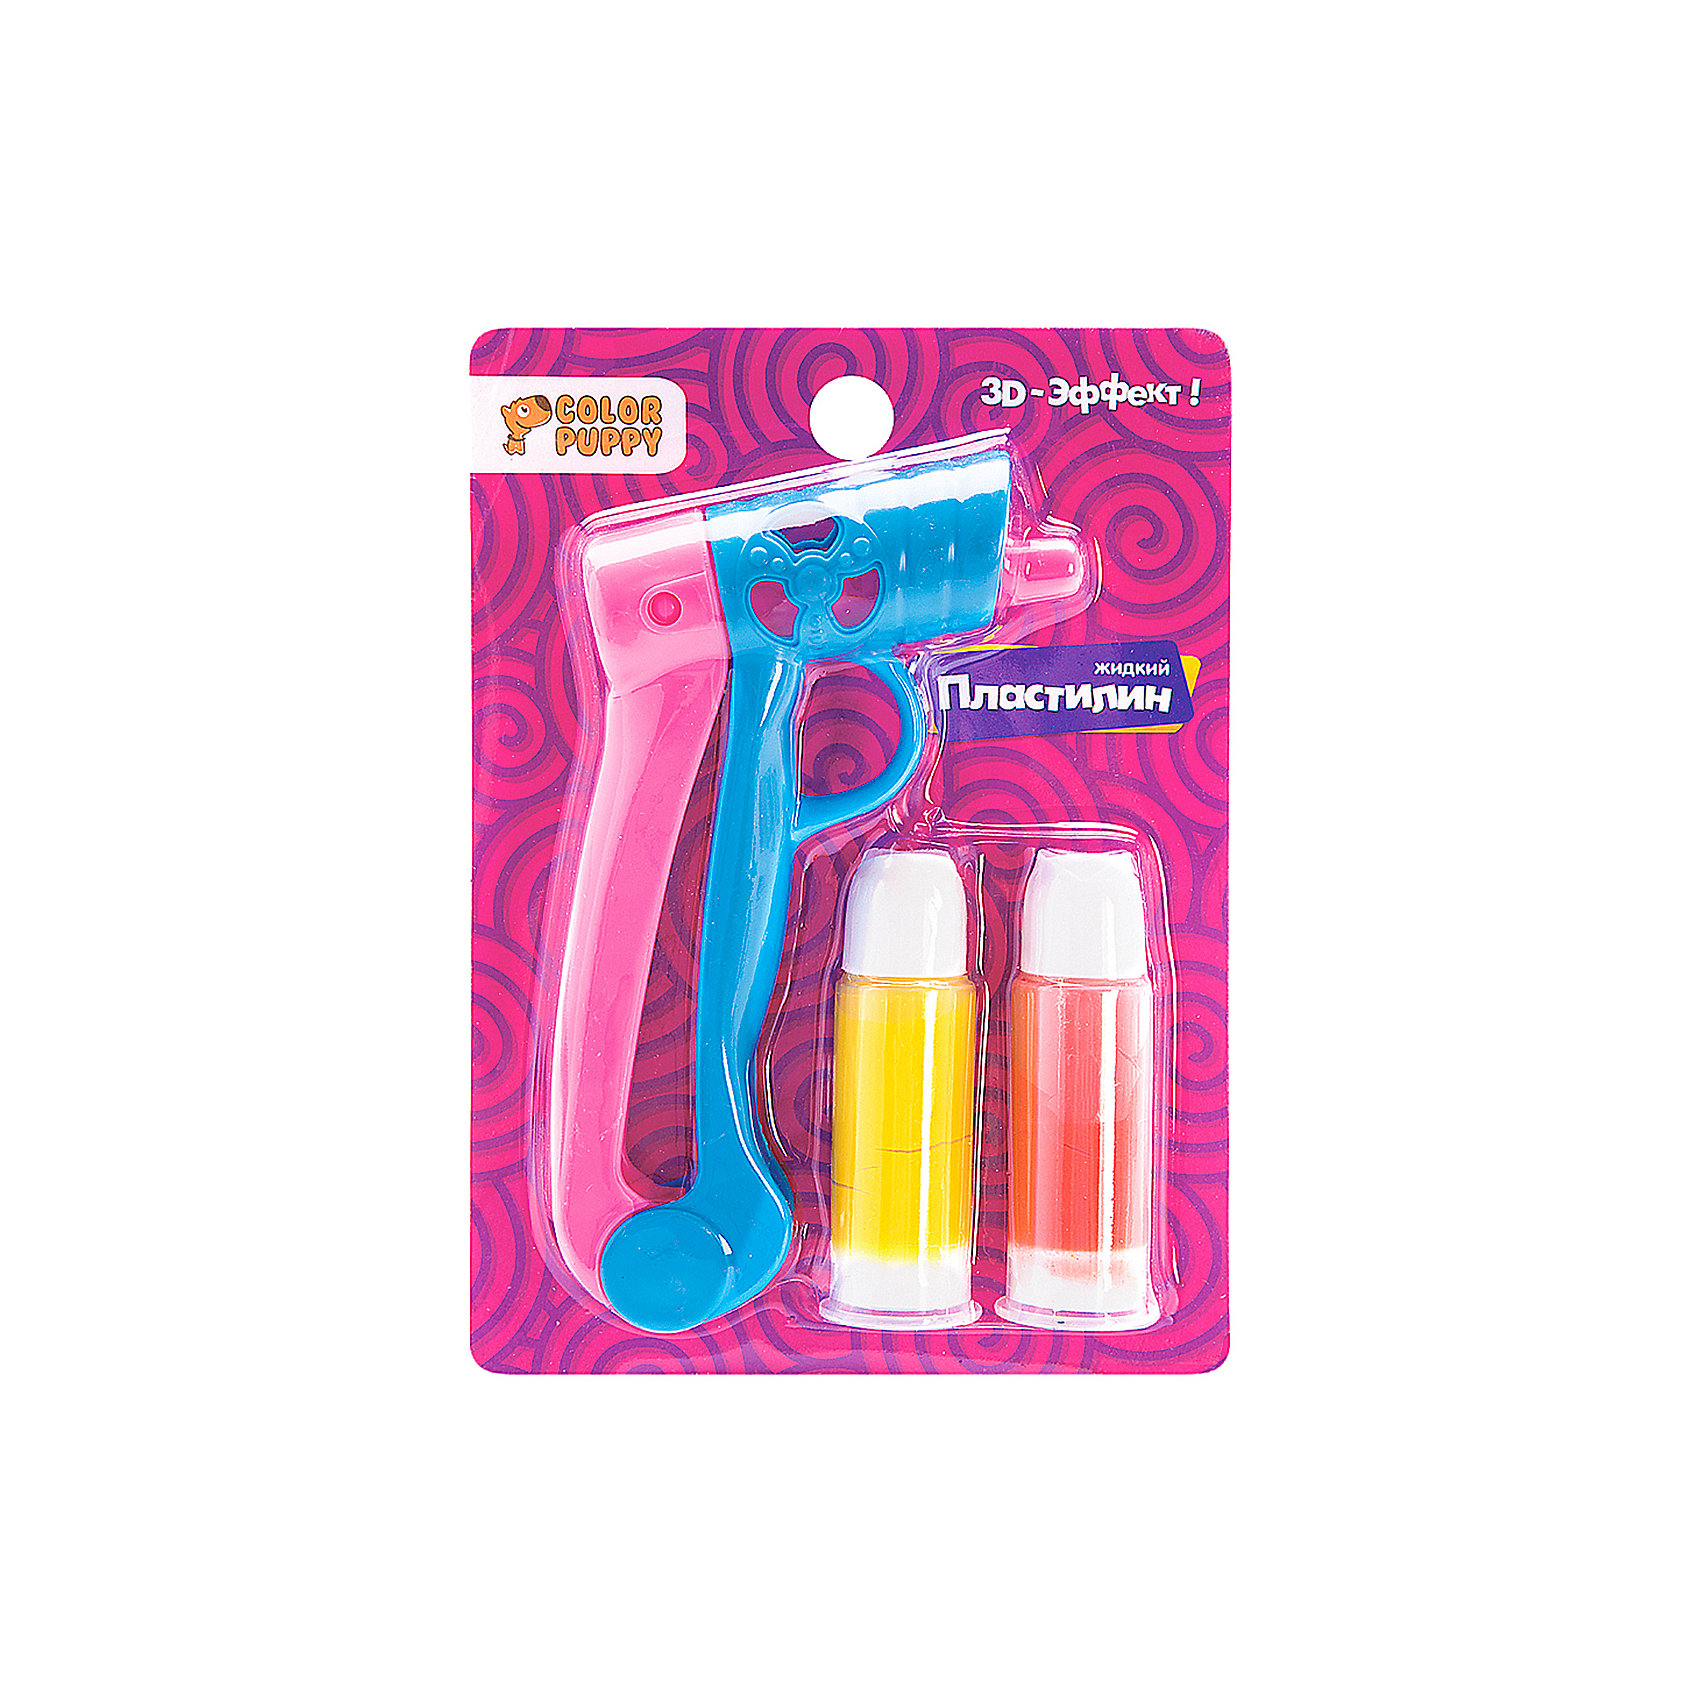 Набор для лепки Color Puppy арт 63935. Пластилин Color Puppy 2 цвета с пистолетом. Лента набор с жидким пластилином. Жидкий пластилин